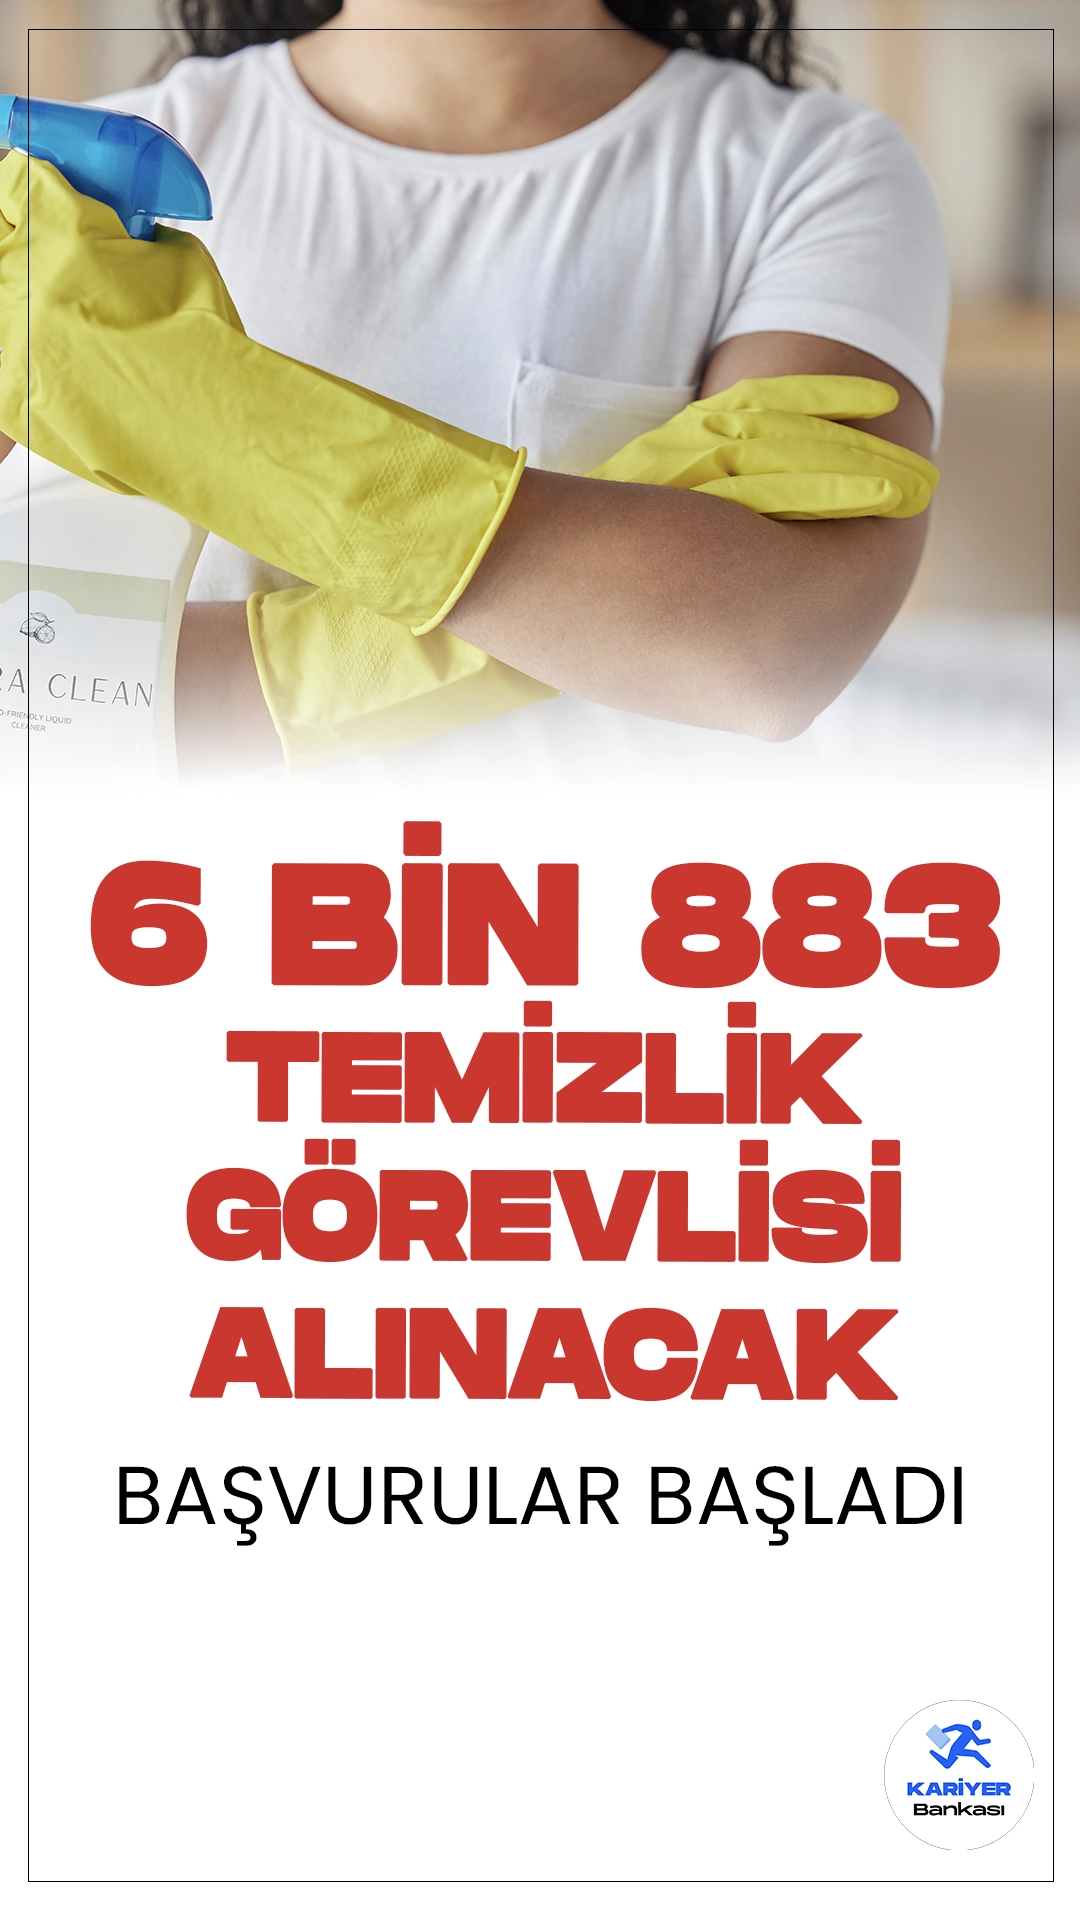 İŞKUR Üzerinden 6 Bin 883 Temizlik Görevlisi Alınacak.Türkiye İş Kurumu (İŞKUR) sayfası üzerinden temizlik görevlisi alımı duyuruları art arda yayımlandı. Özel sektör firmaları tarafından yayımlanan duyurularda, en az ilk okul mezunu 6883 temizlik görevlisi alımı yapılacağı aktarıldı. Başvuru işlemleri İŞKUR sayfası üzerinden online olarak gerçekleştirilecek.